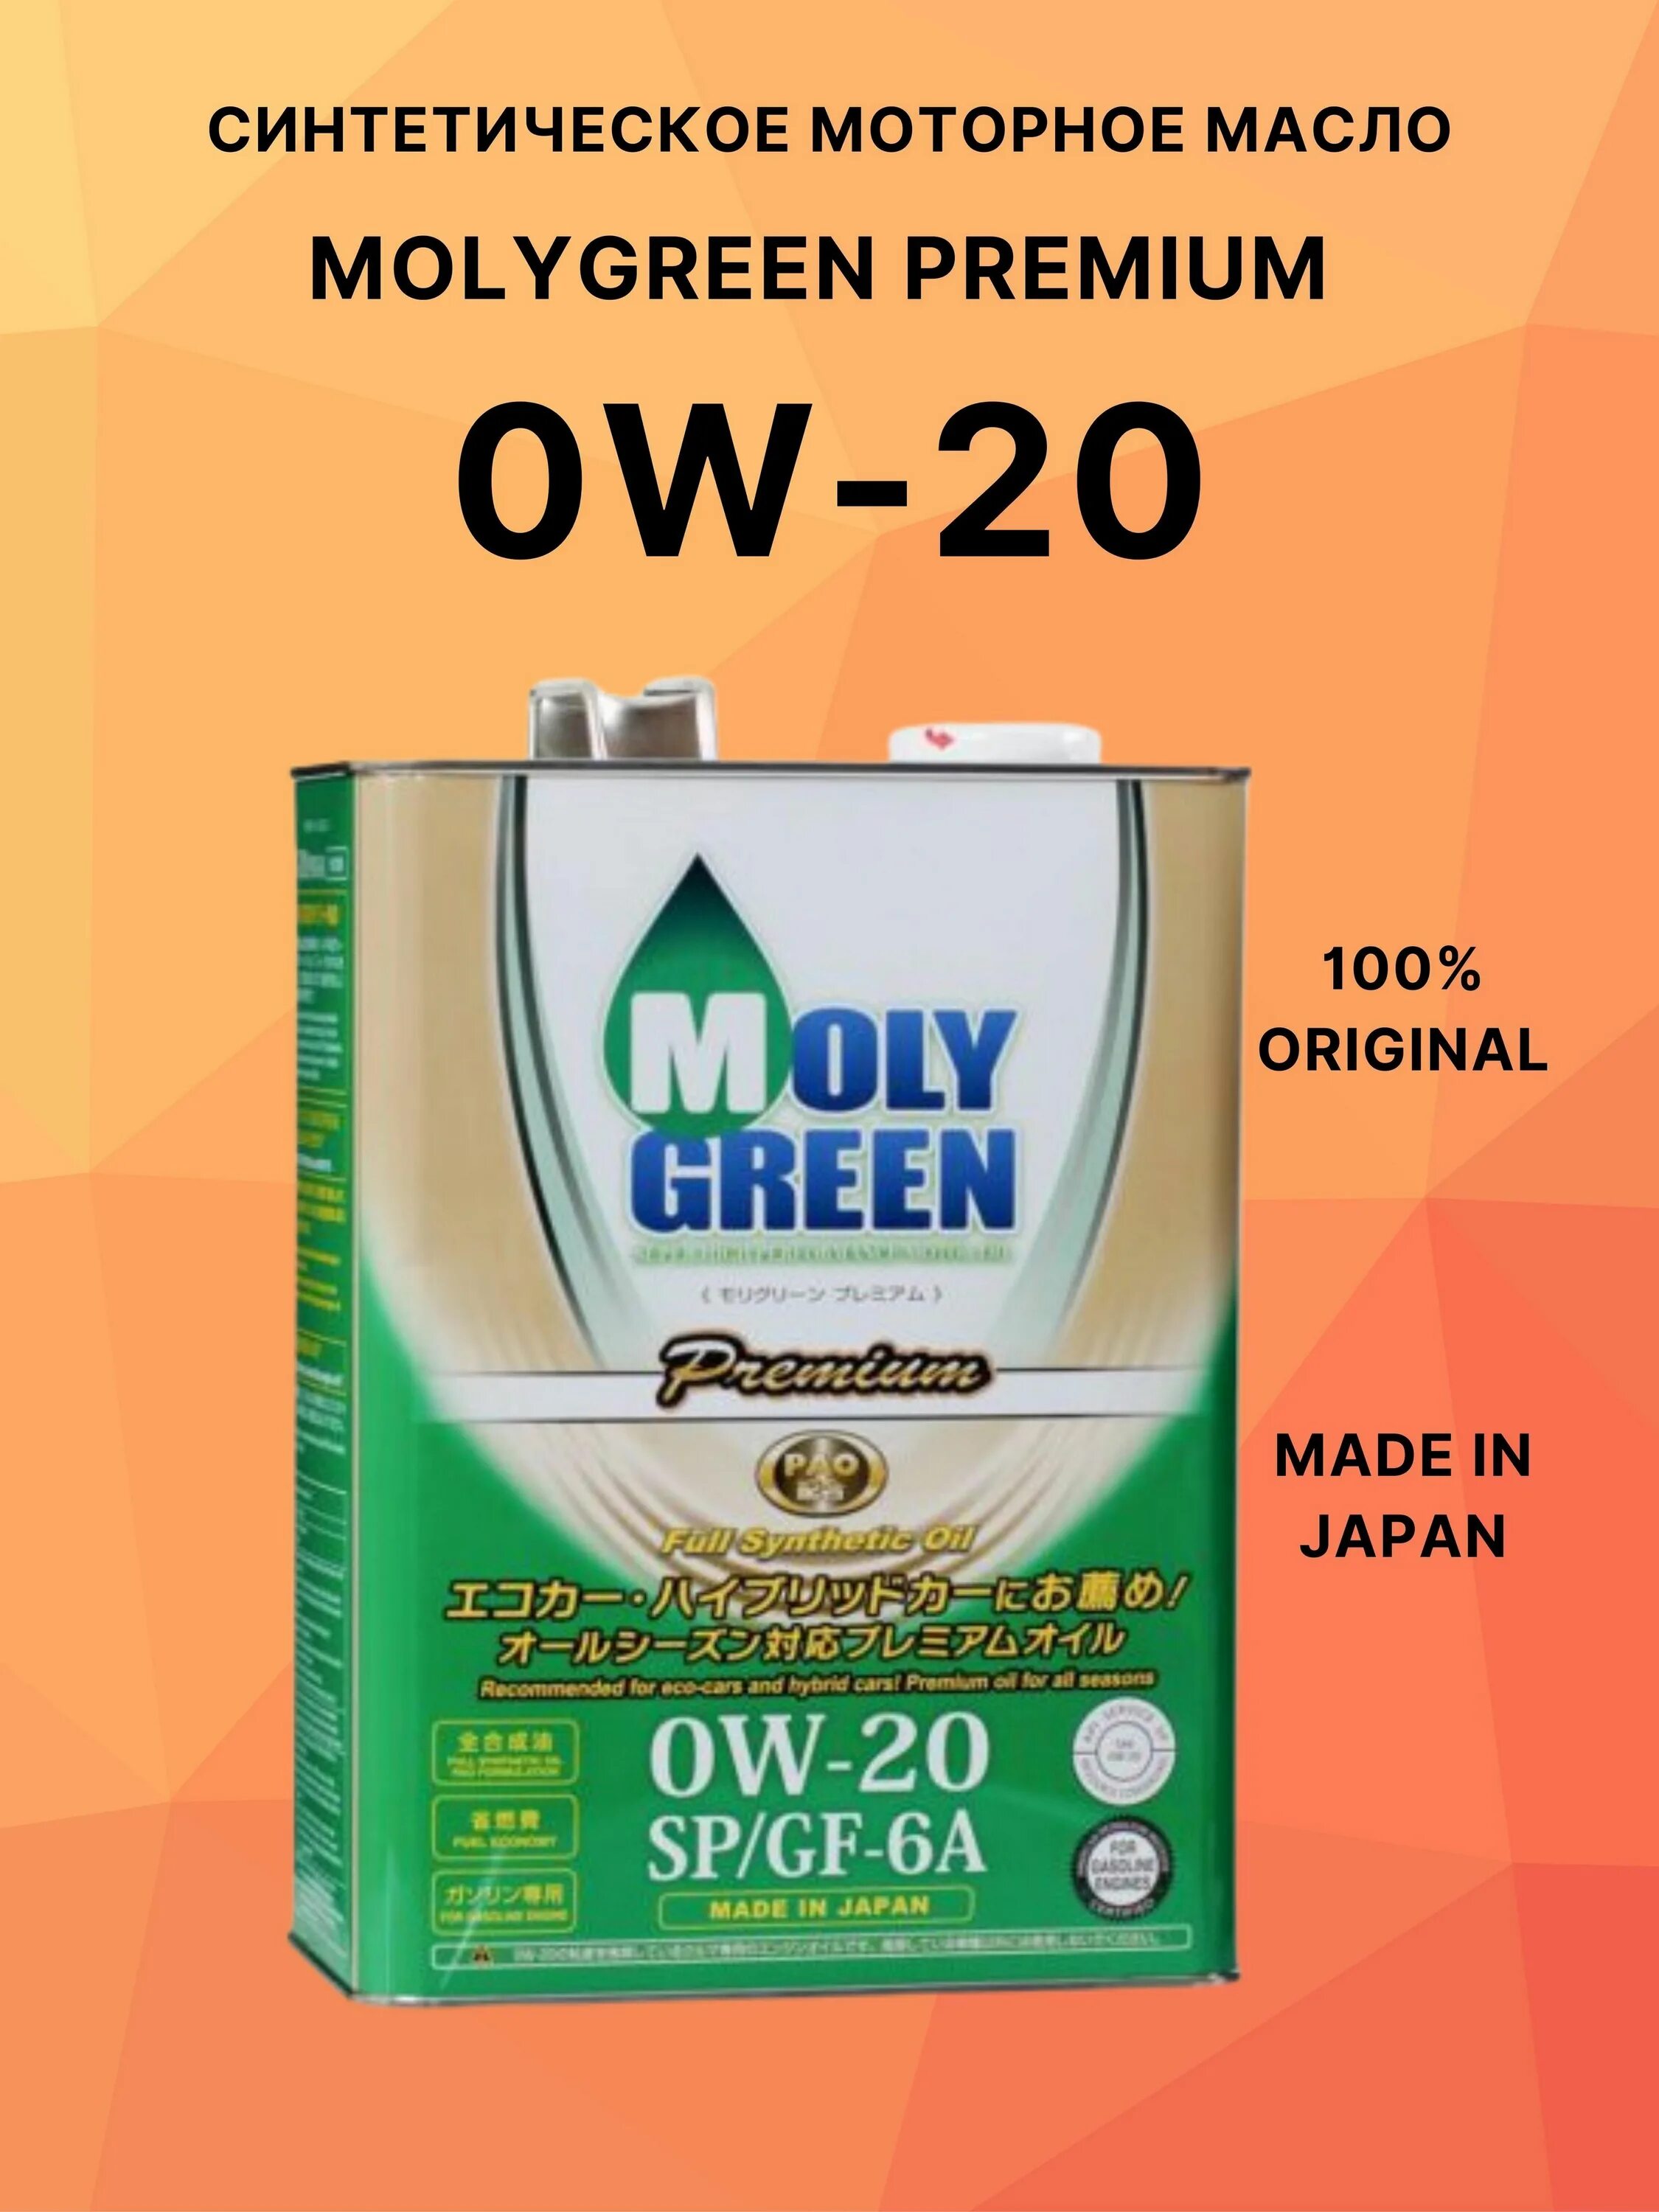 Moly моторное масло отзывы. Moly Green Premium 0w20 4л. Моторное масло Moly Green Premium 0w-20. Масло моторное Молли Грин 0w20. Moly Green Premium SP/gf-6a 0w-20 синтетическое моторное масло.